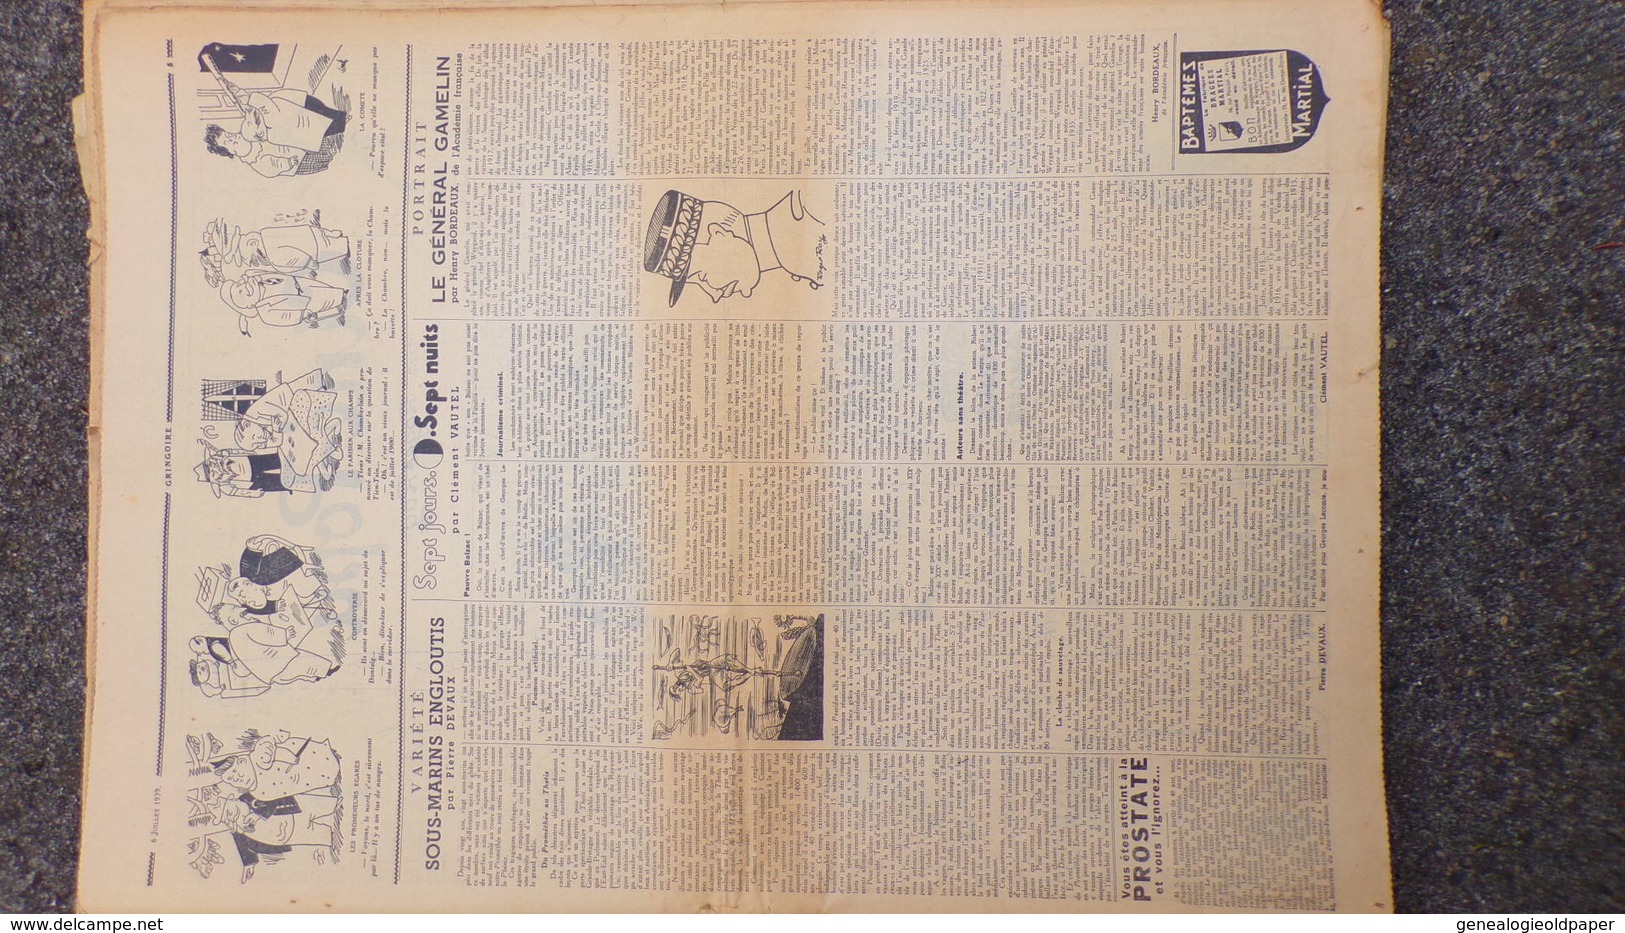 GRINGOIRE -6 JUILLET 1939-N° 556-JOURNAL WW2 PRESSE HEBDO-PARIS-BERAUD-TARDIEU-RECOULY-HITLER-TURQUIE-DANTAZIG-GAMELIN - French